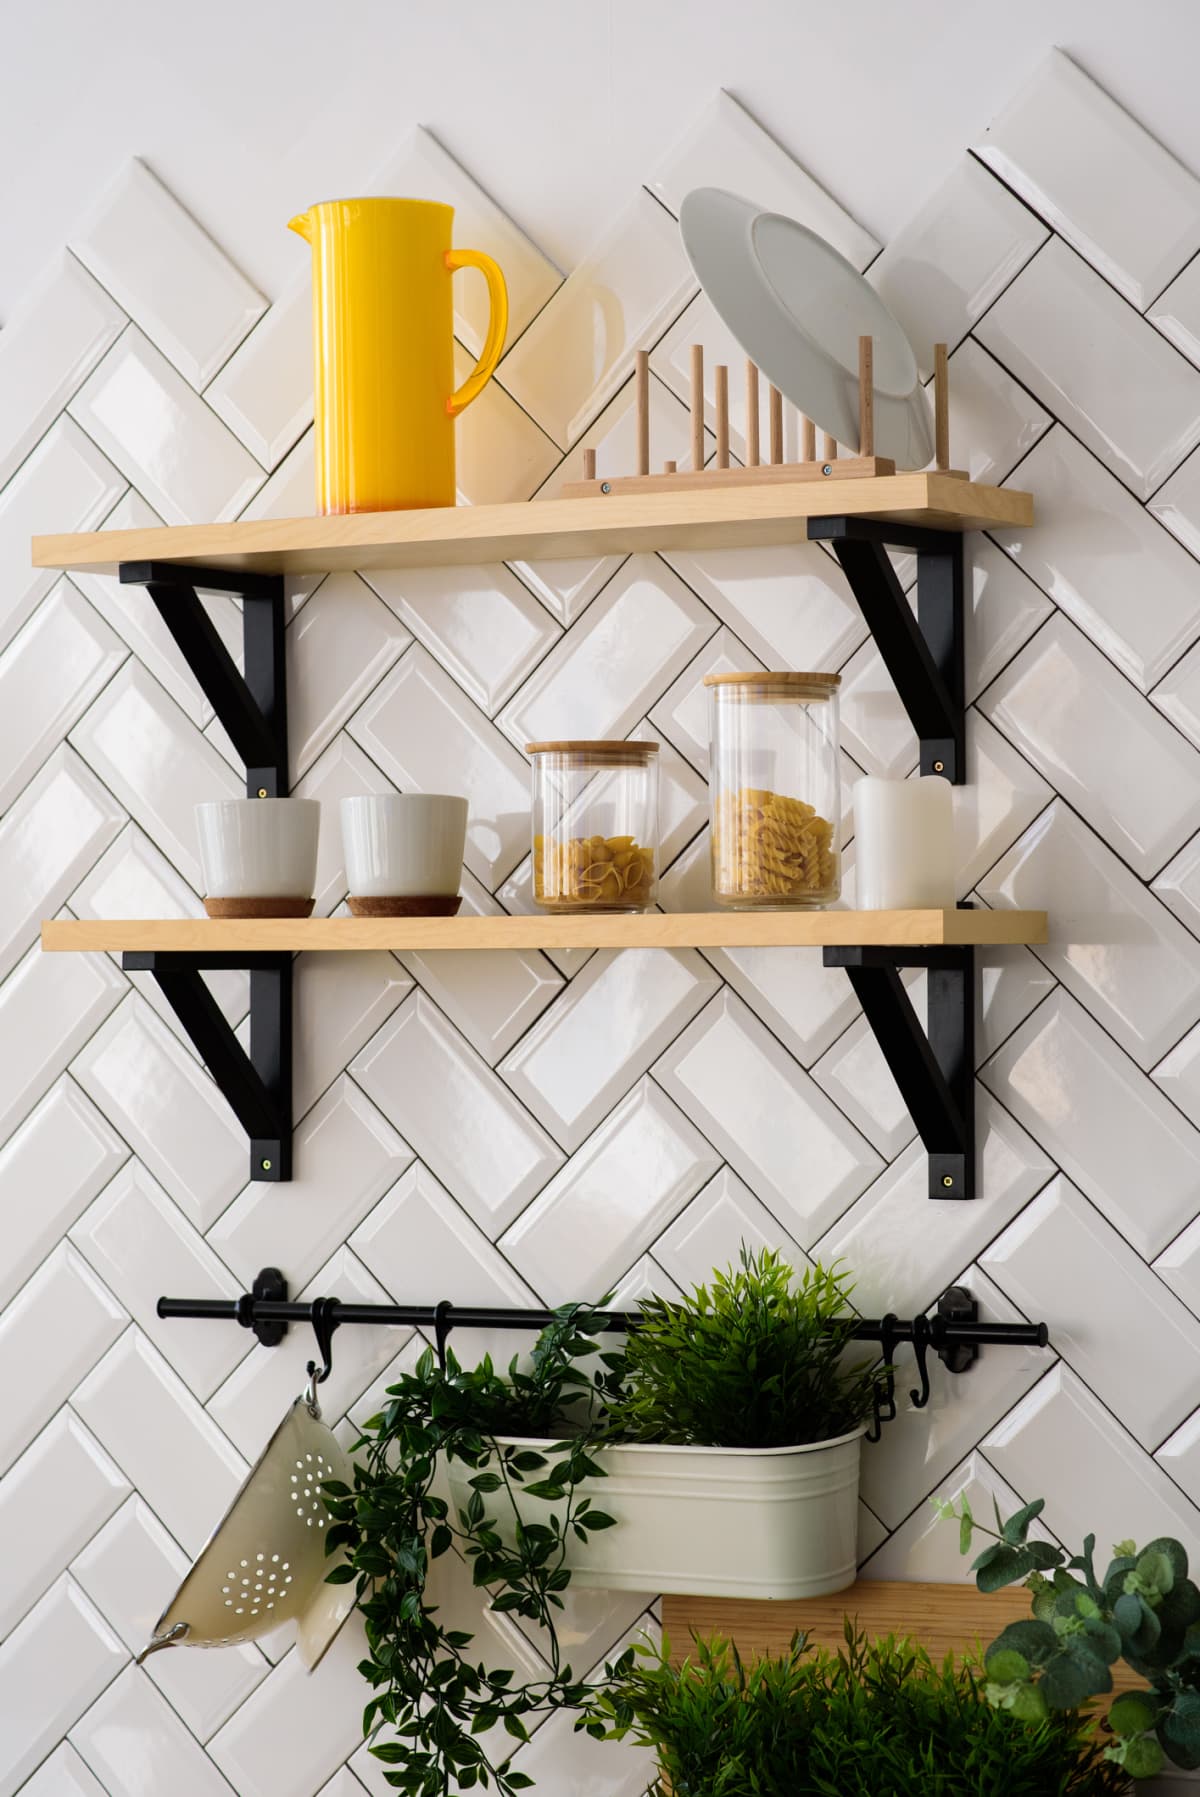 A kitchen wall with diagonal white tiles